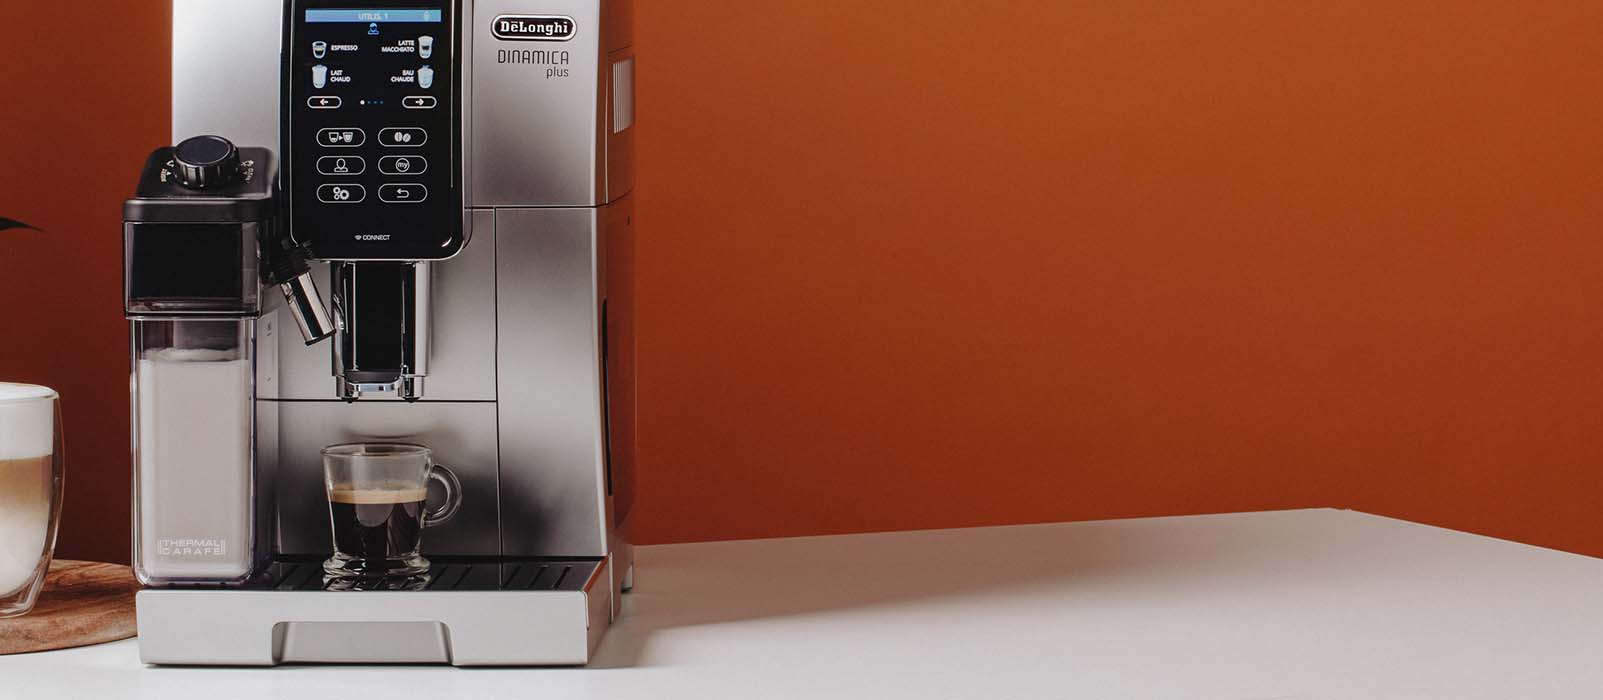 comment faire un bon café avec une machine à café à grain